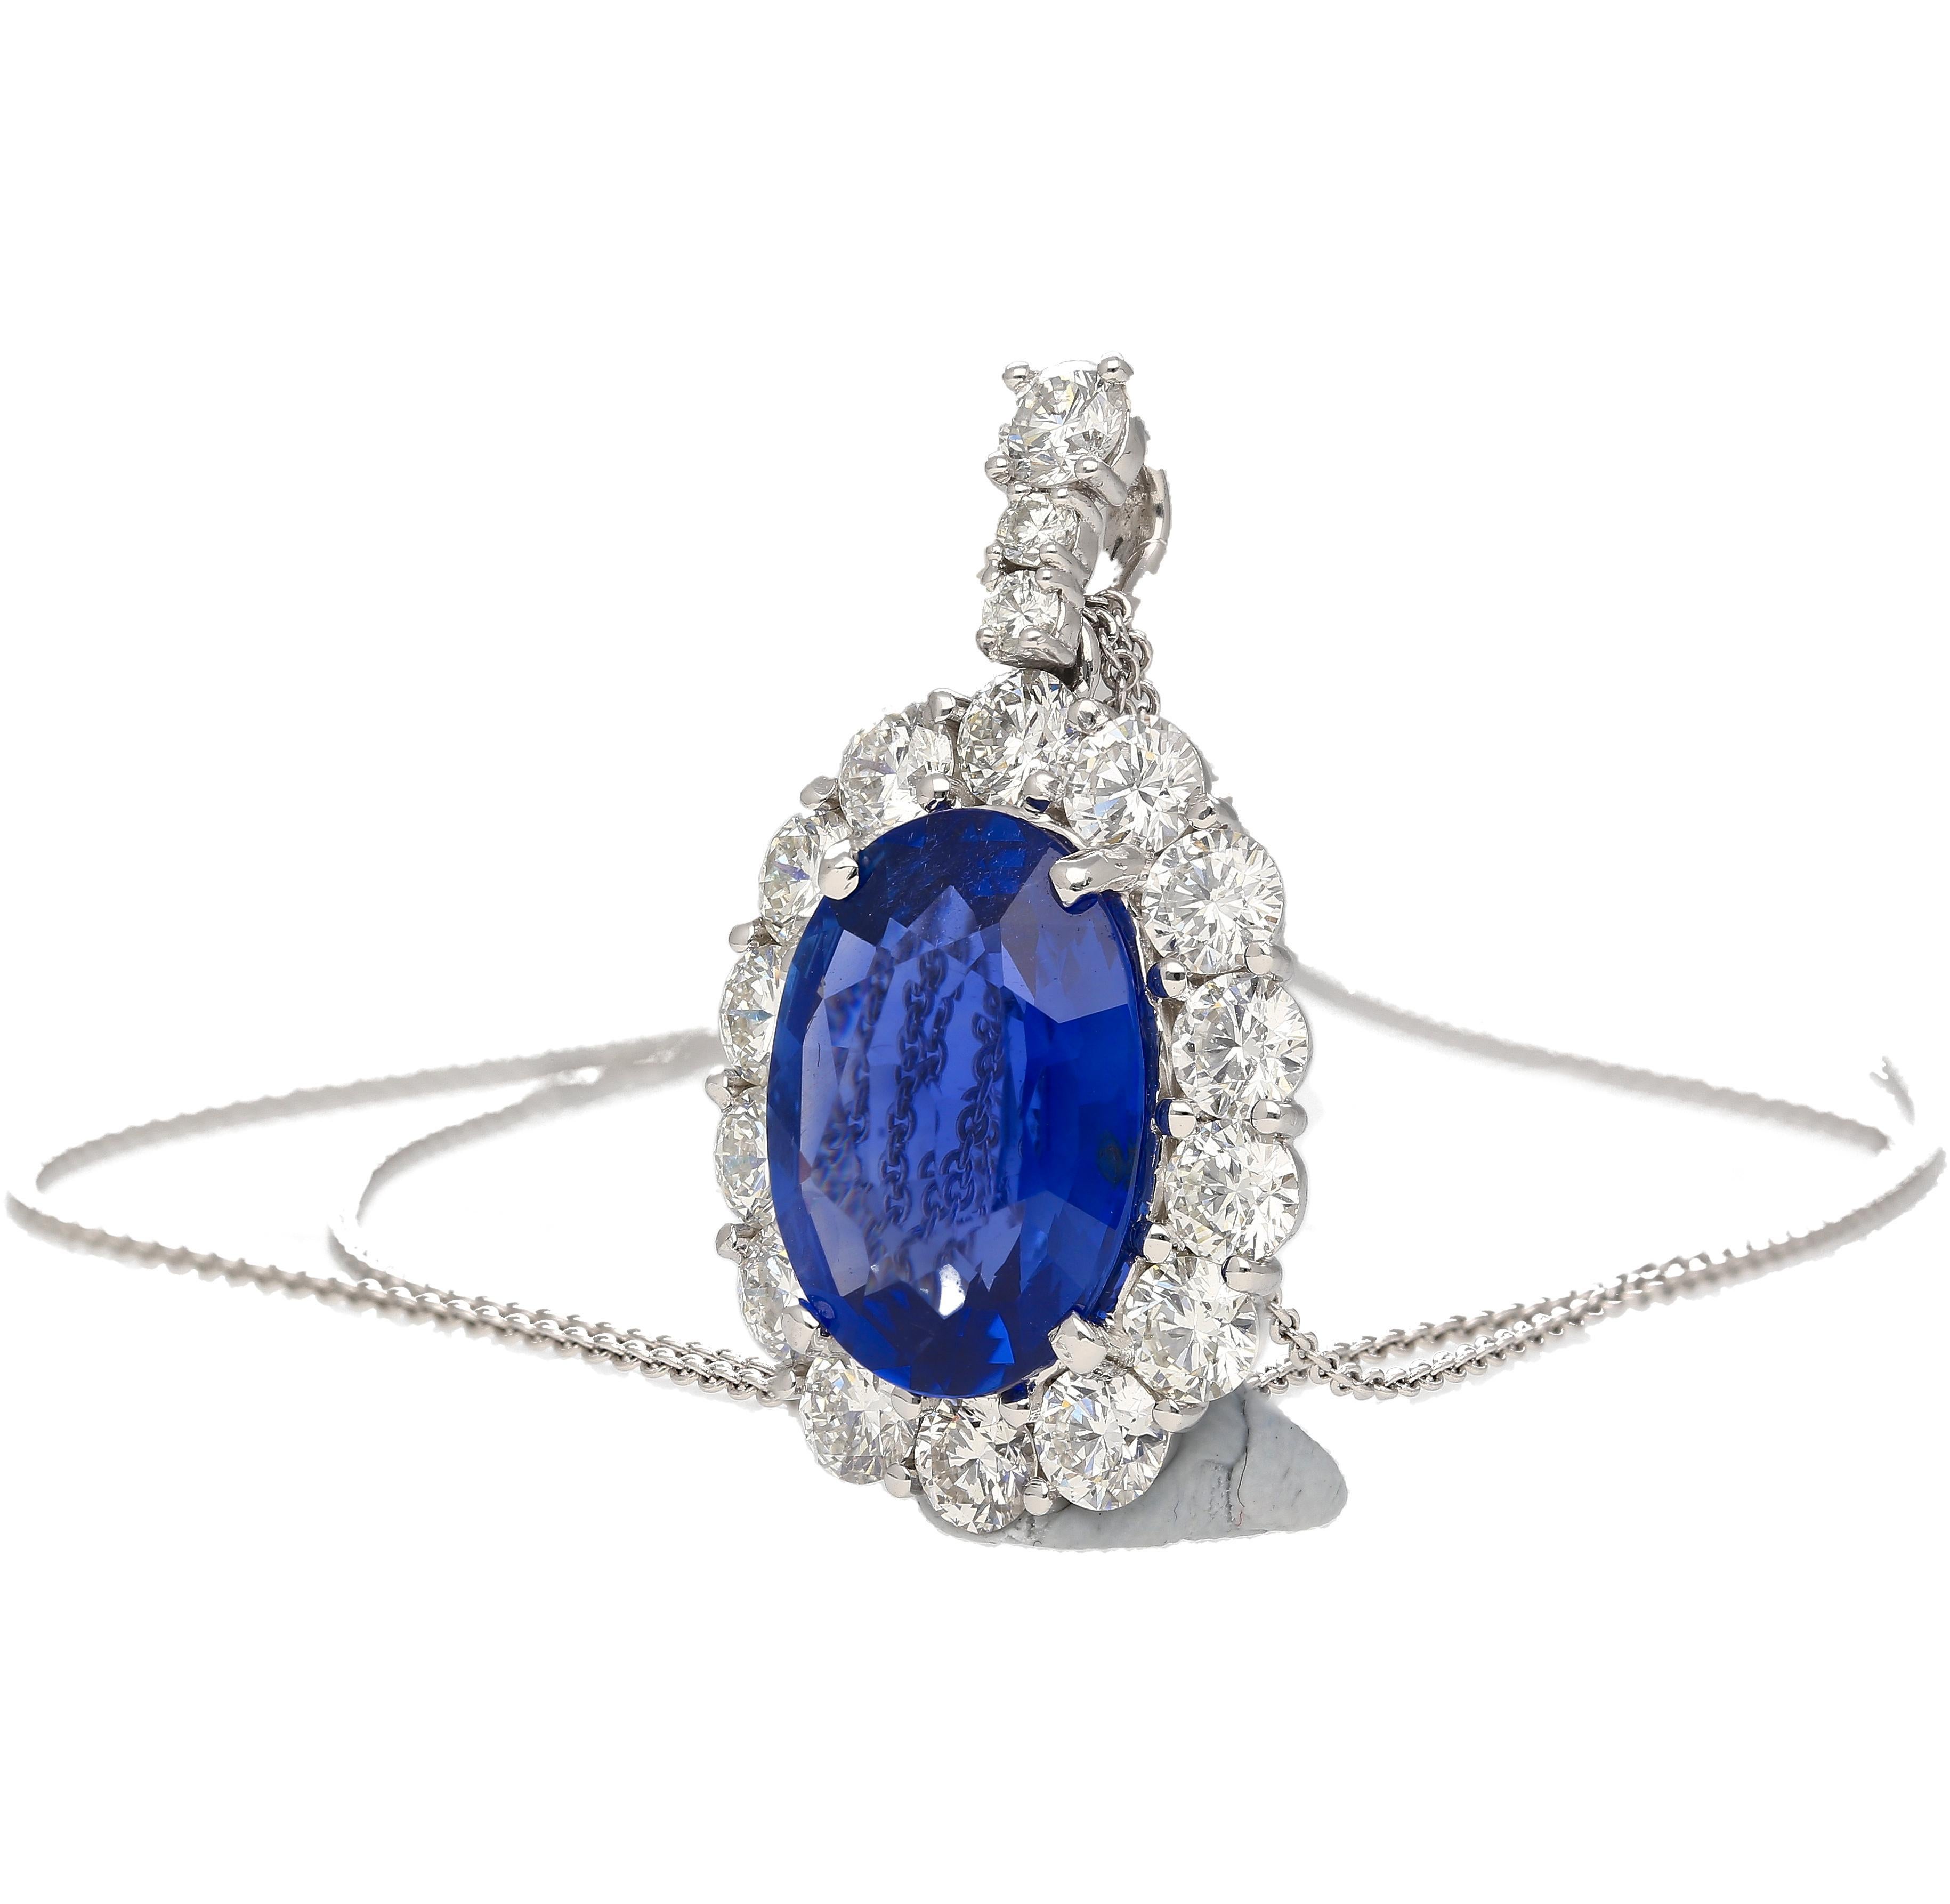 5.83 Carat Oval Cut Sri Lanka Blue Sapphire & Diamond Halo Pendant in Platinum 900. 

Ce collier accrocheur est orné d'un saphir bleu naturel de taille ovale certifié GRS et est fixé à l'aide d'une monture à quatre griffes. Le saphir n'a subi aucun